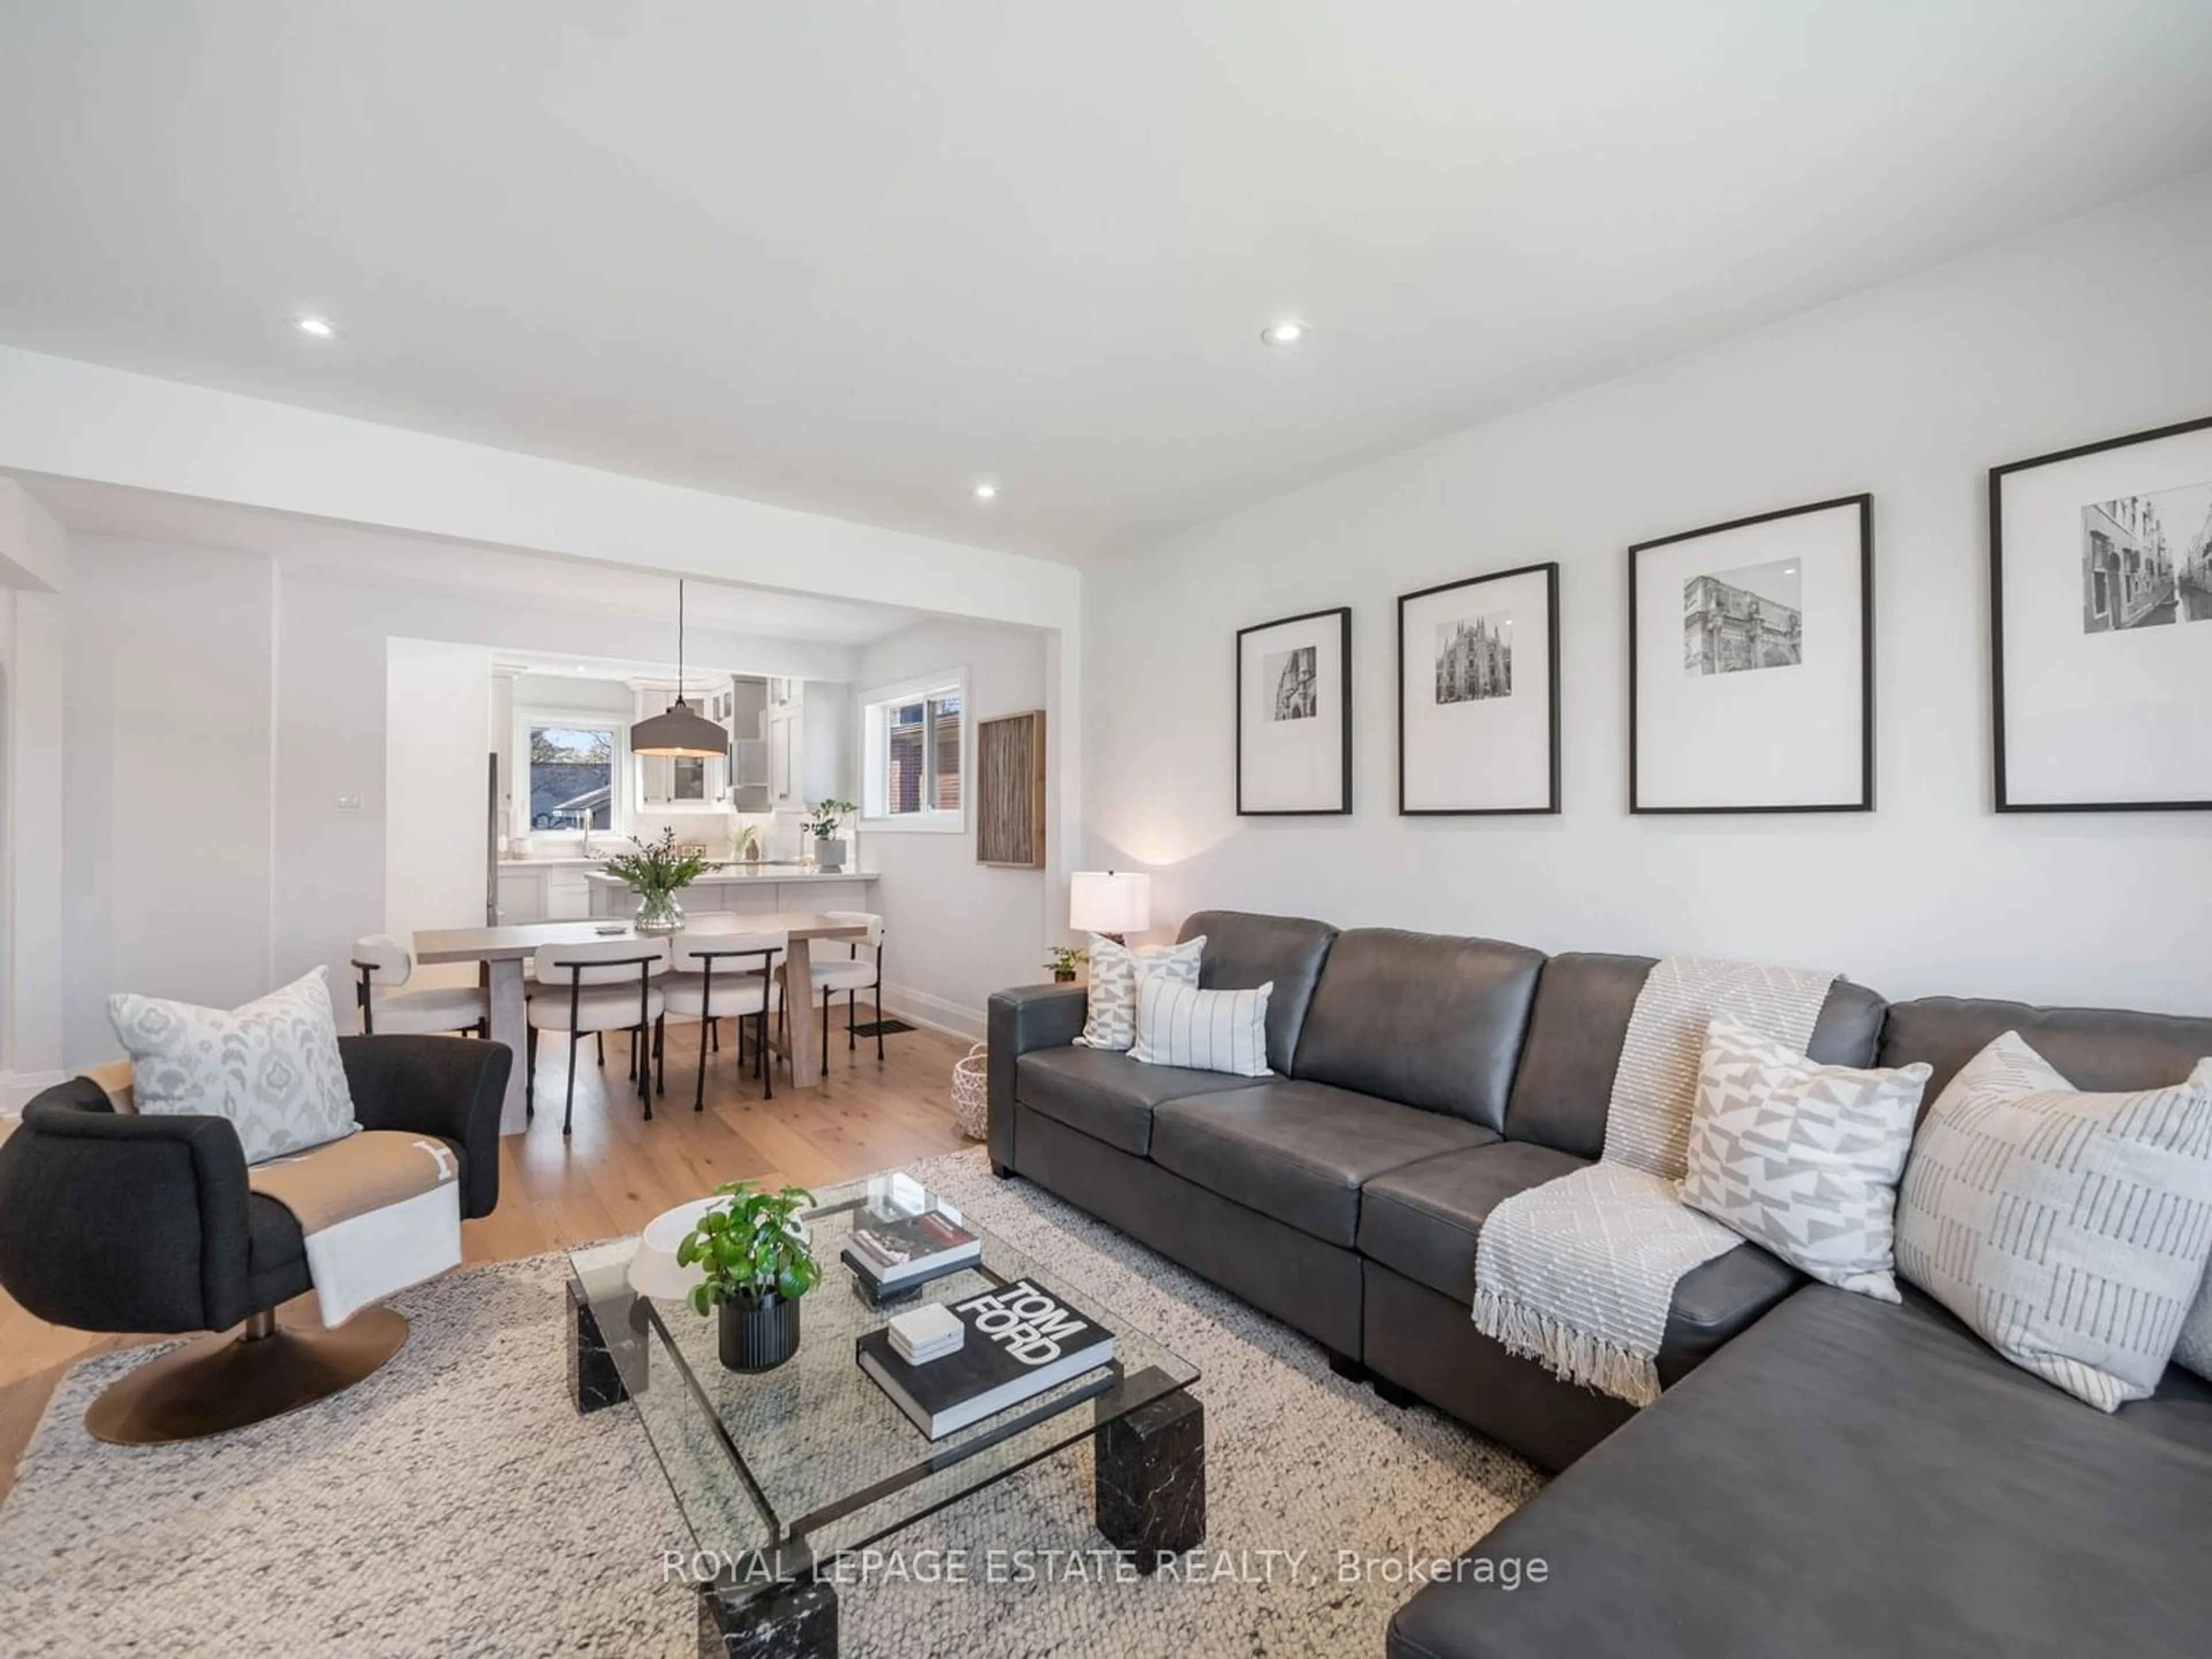 Living room for 32 Glen Everest Rd, Toronto Ontario M1N 1J3